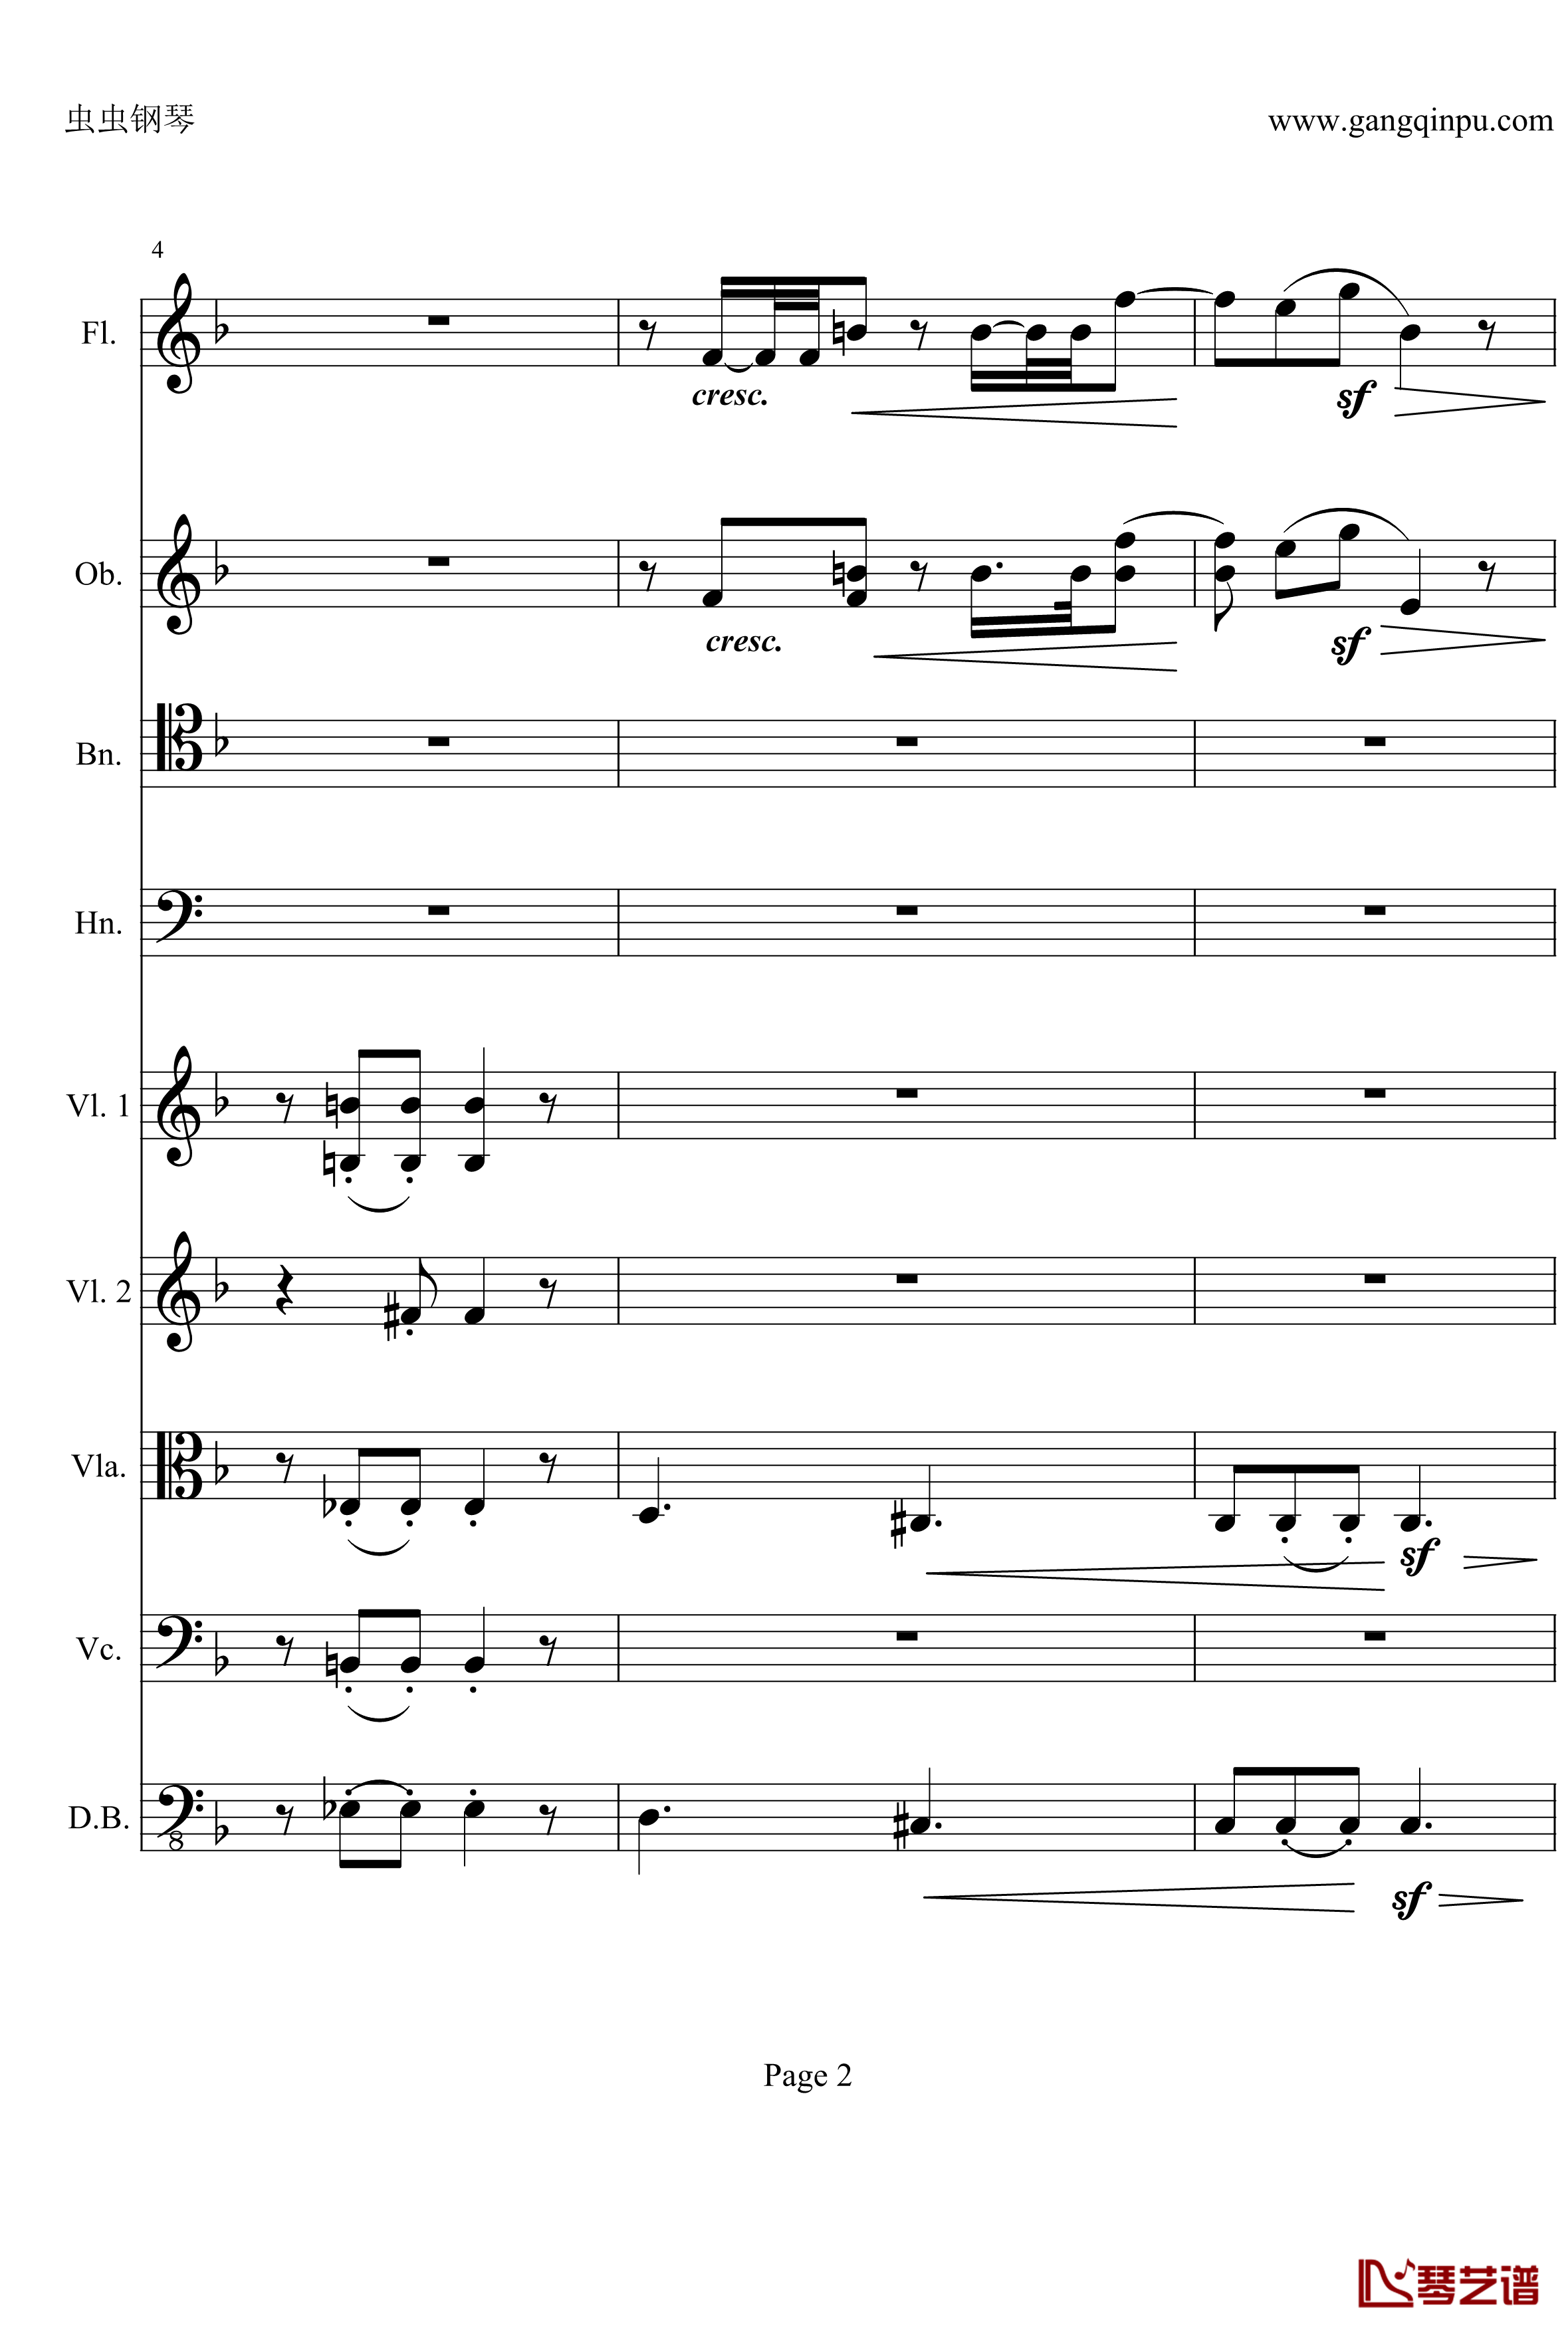 奏鸣曲之交响钢琴谱-第21-Ⅱ-贝多芬-beethoven2